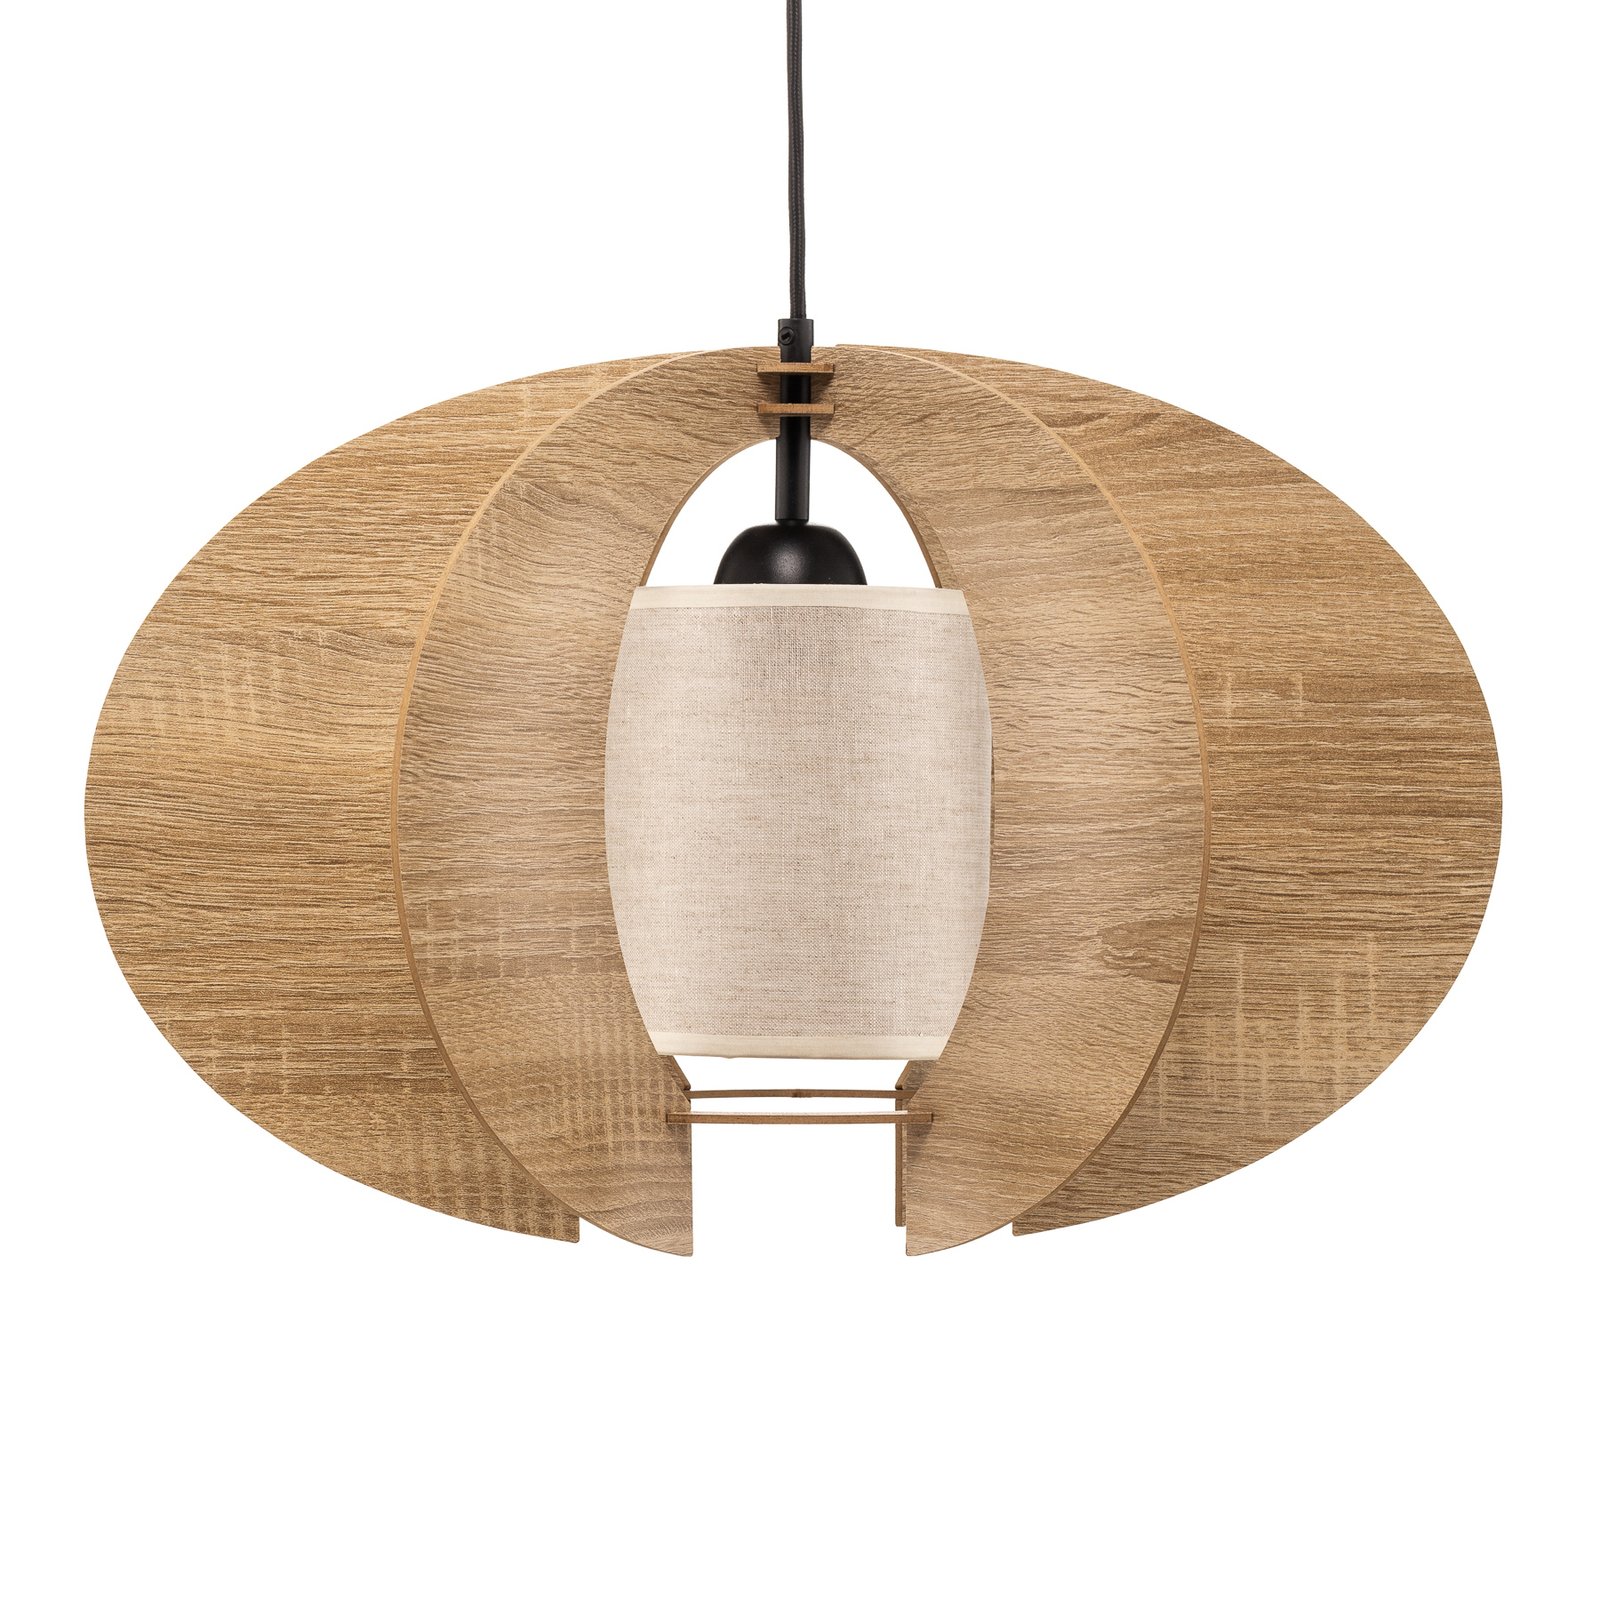 Lampa wisząca Modern C drewniane listwy, Ø 50 cm